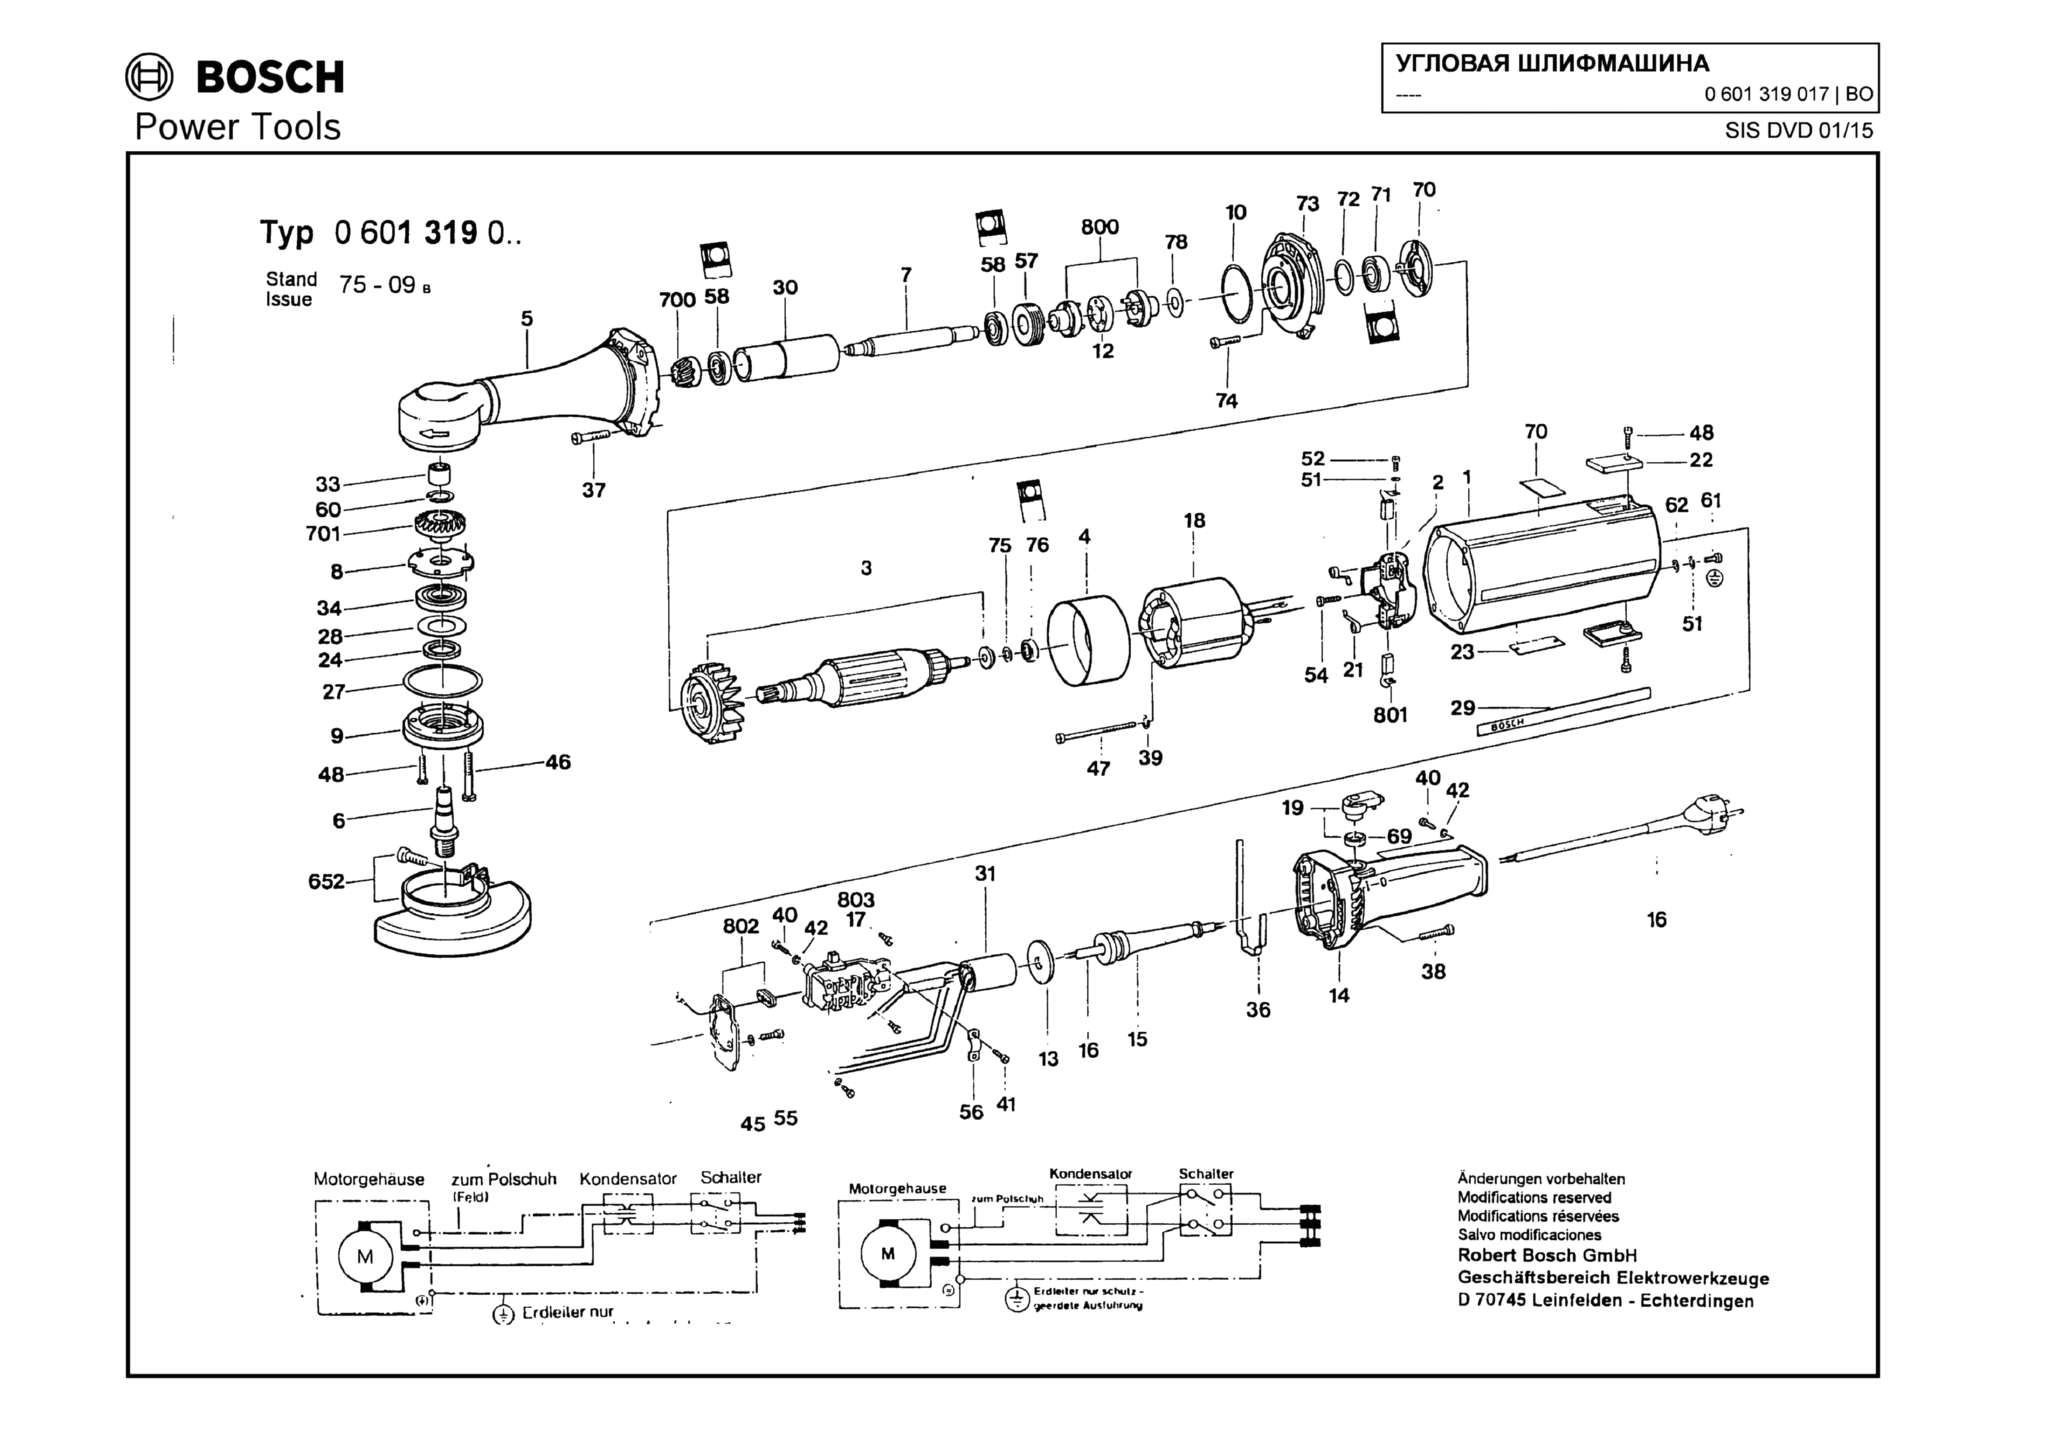 Запчасти, схема и деталировка Bosch (ТИП 0601319017)